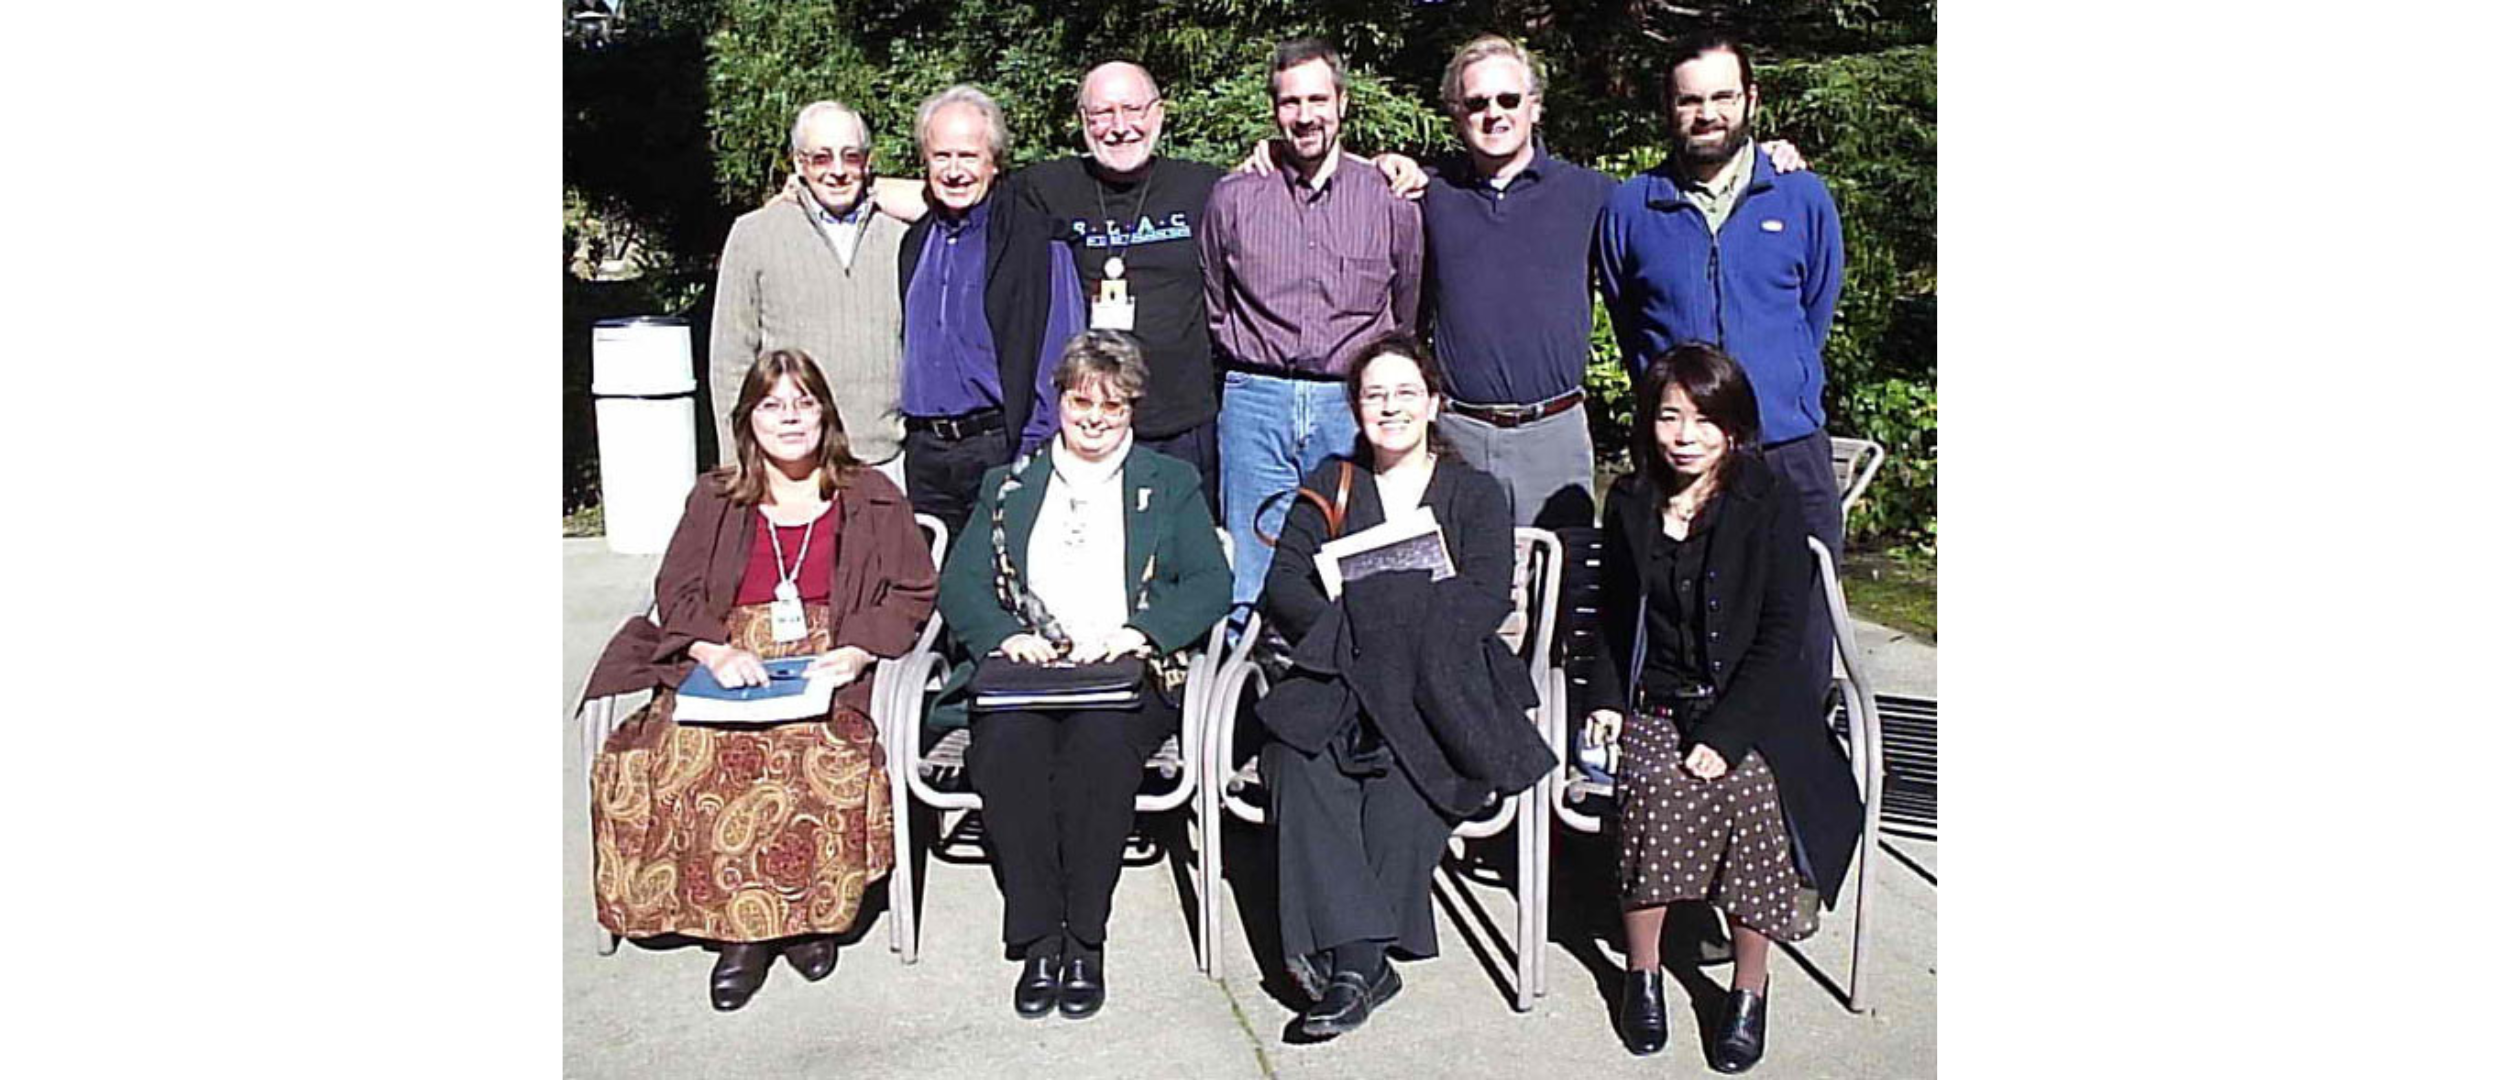 Zdjęcie 1. Członkowie uczestniczący w spotkaniu Lightsources.org w 2006 r. zorganizowanym przez Advanced Photon Source (APS) w Illinois, USA.